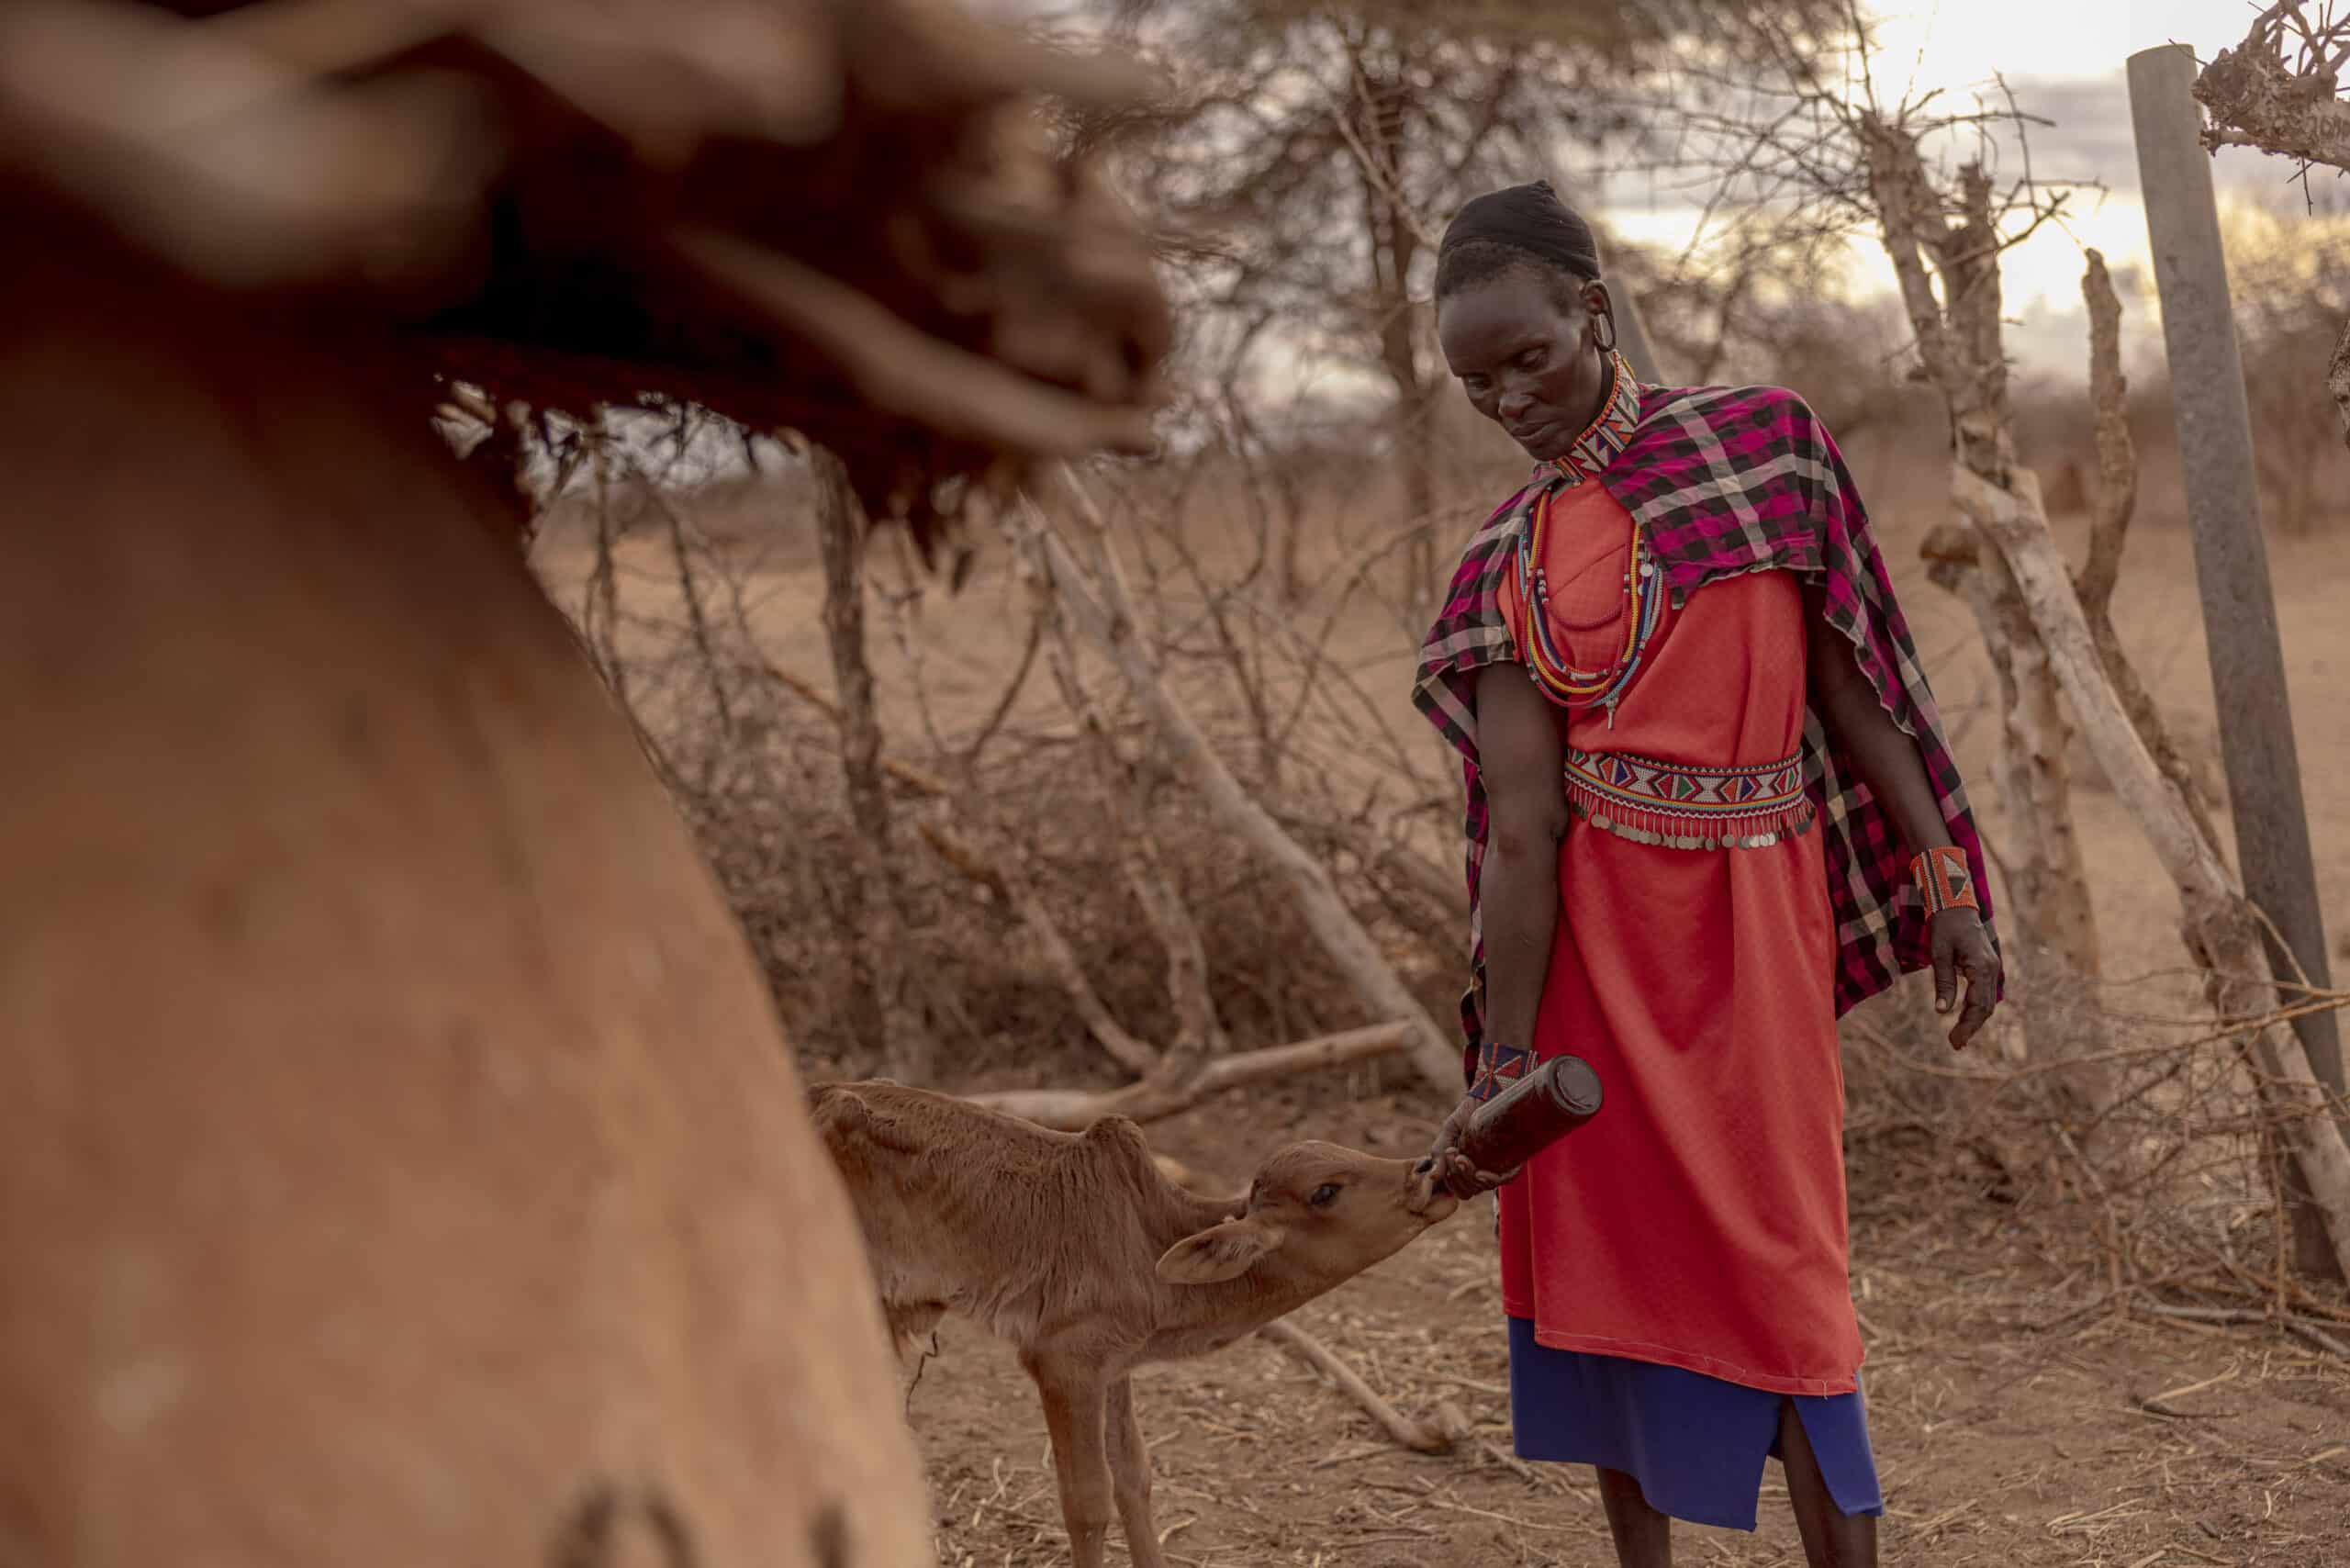 Eine Frau in traditioneller Kleidung füttert in einer trockenen, buschigen Landschaft ein junges Kalb aus einer Flasche. Die Szene drückt einen zärtlichen Moment der Fürsorge zwischen Mensch und Tier aus. © Fotografie Tomas Rodriguez